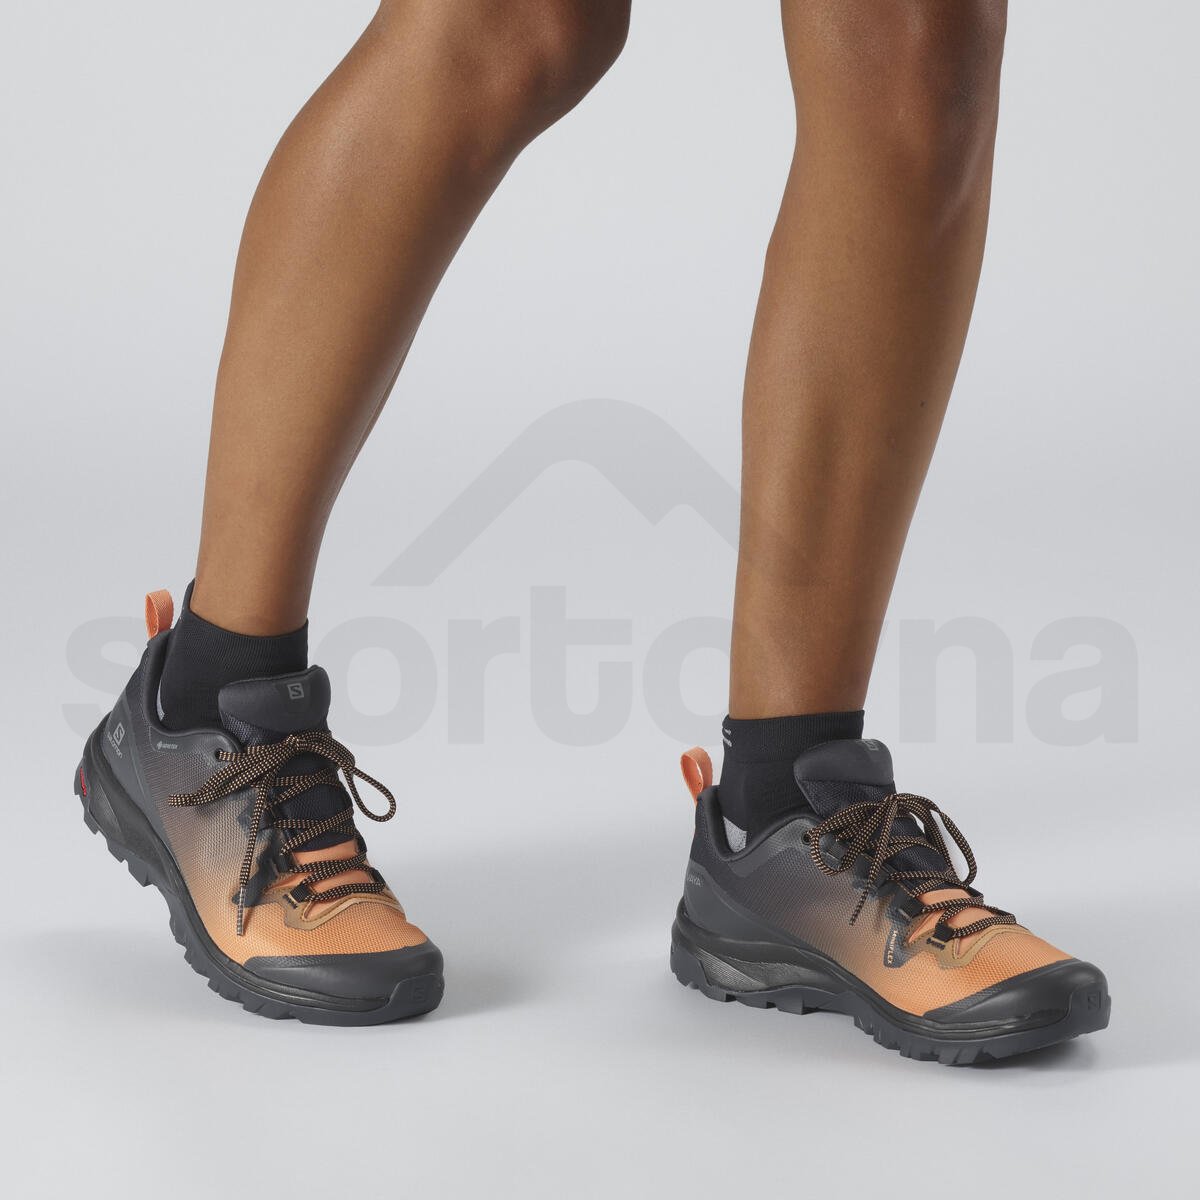 Treková obuv Salomon Vaya GTX W - černá/oranžová